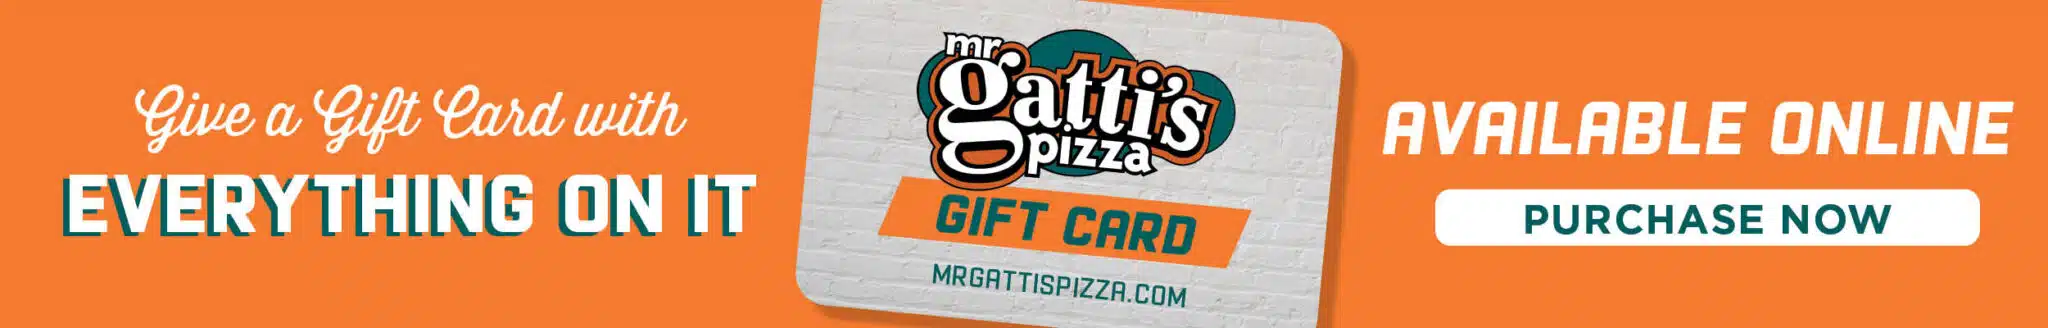 Mr Gatti's Pizza Mr Gatti's Pizza Gattis Gift Card Banner